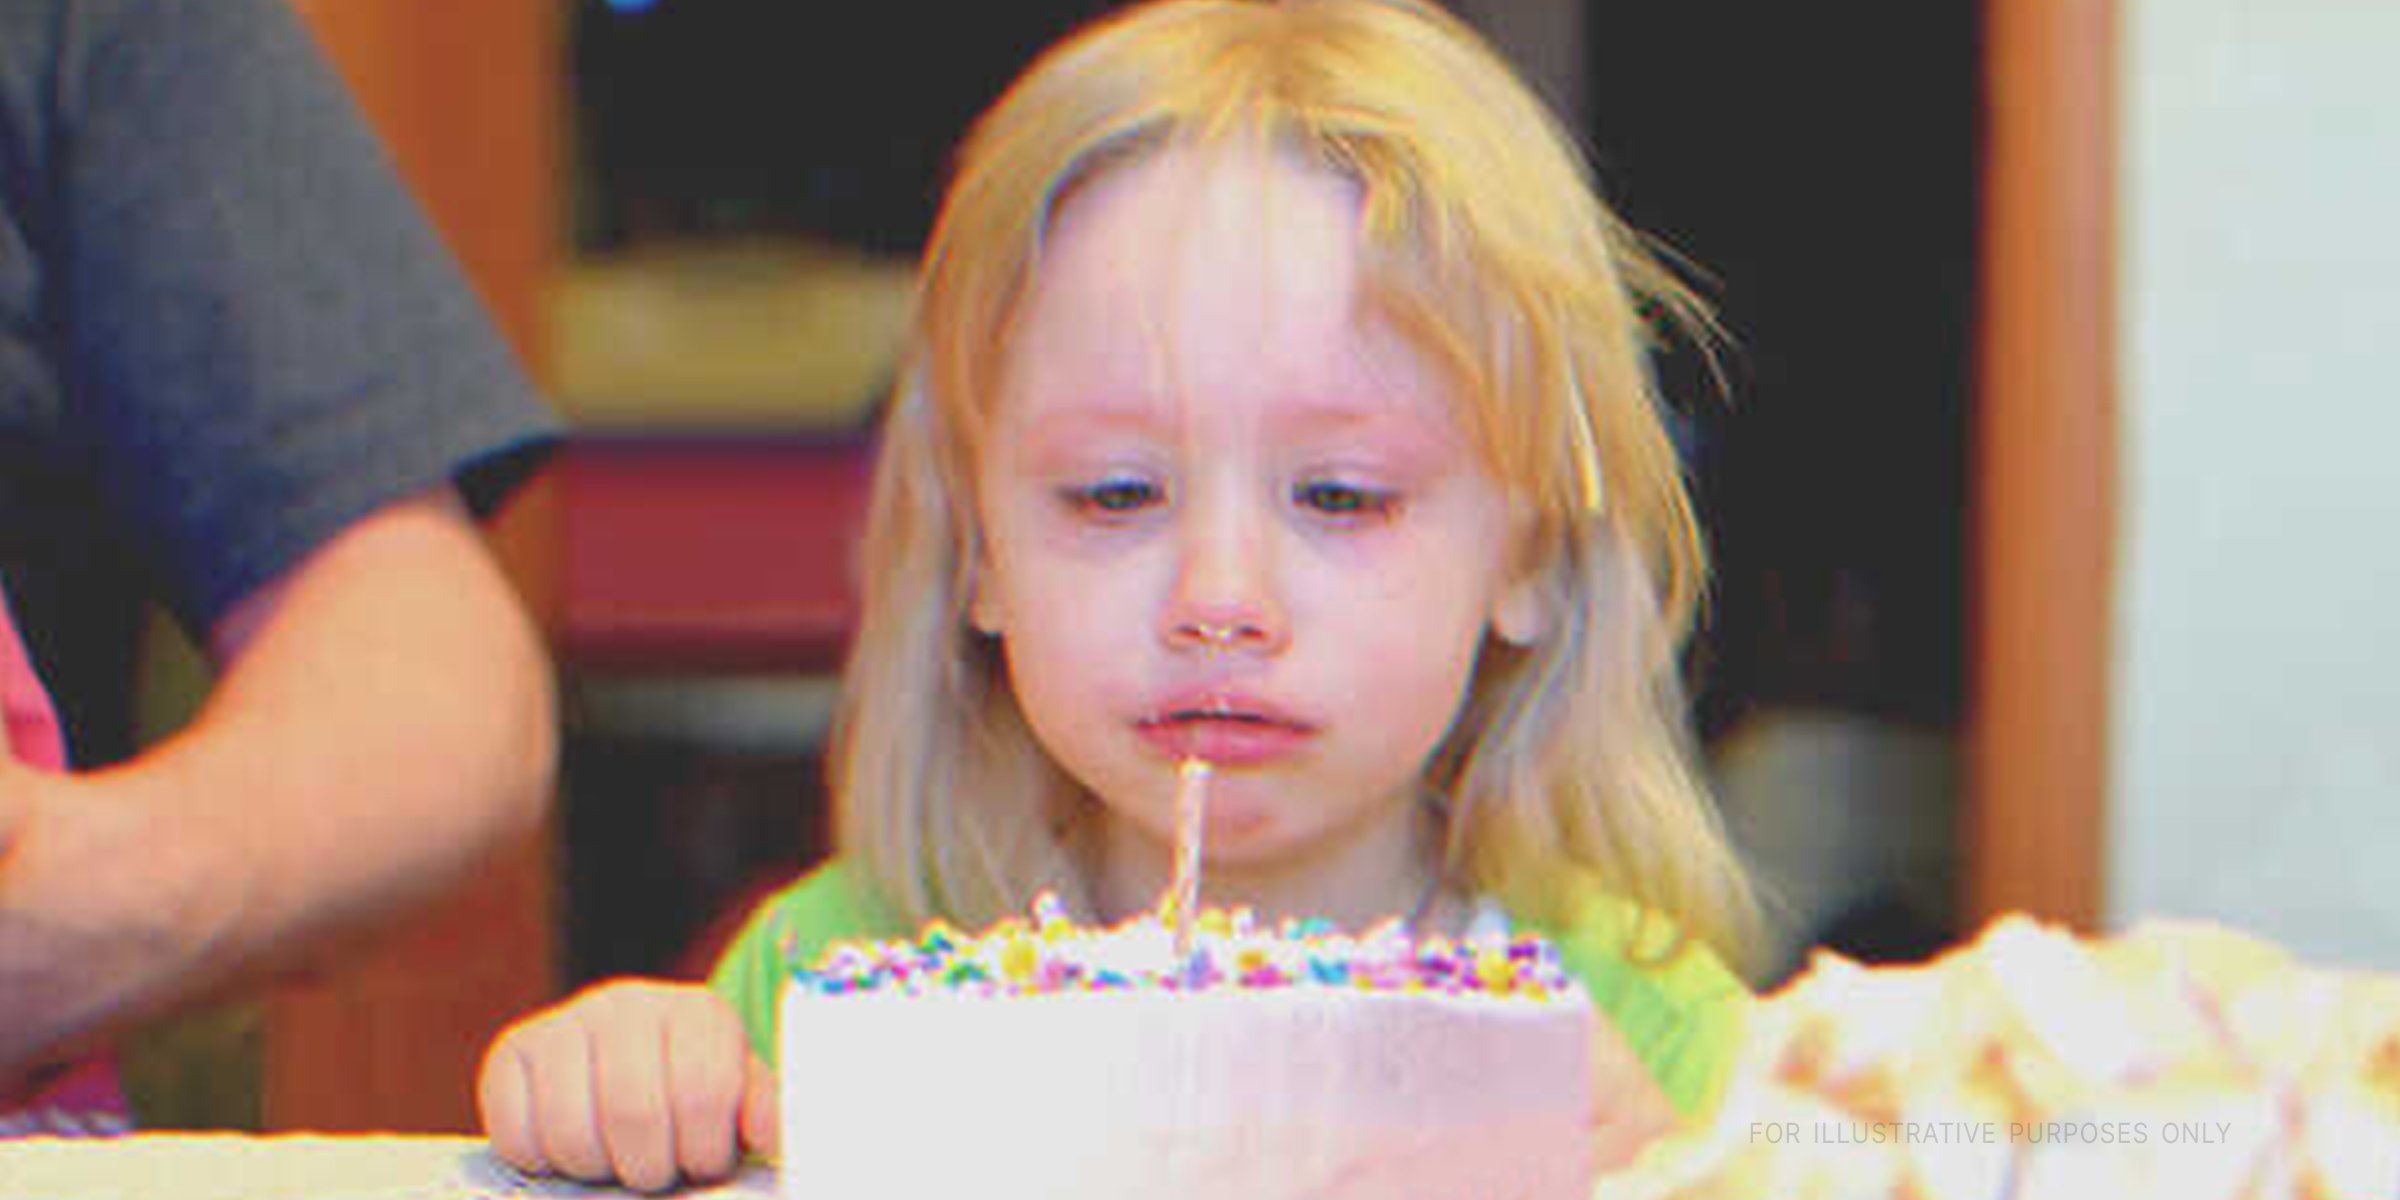 Ein Mädchen mit einem Geburtstagskuchen | Quelle: Shutterstock